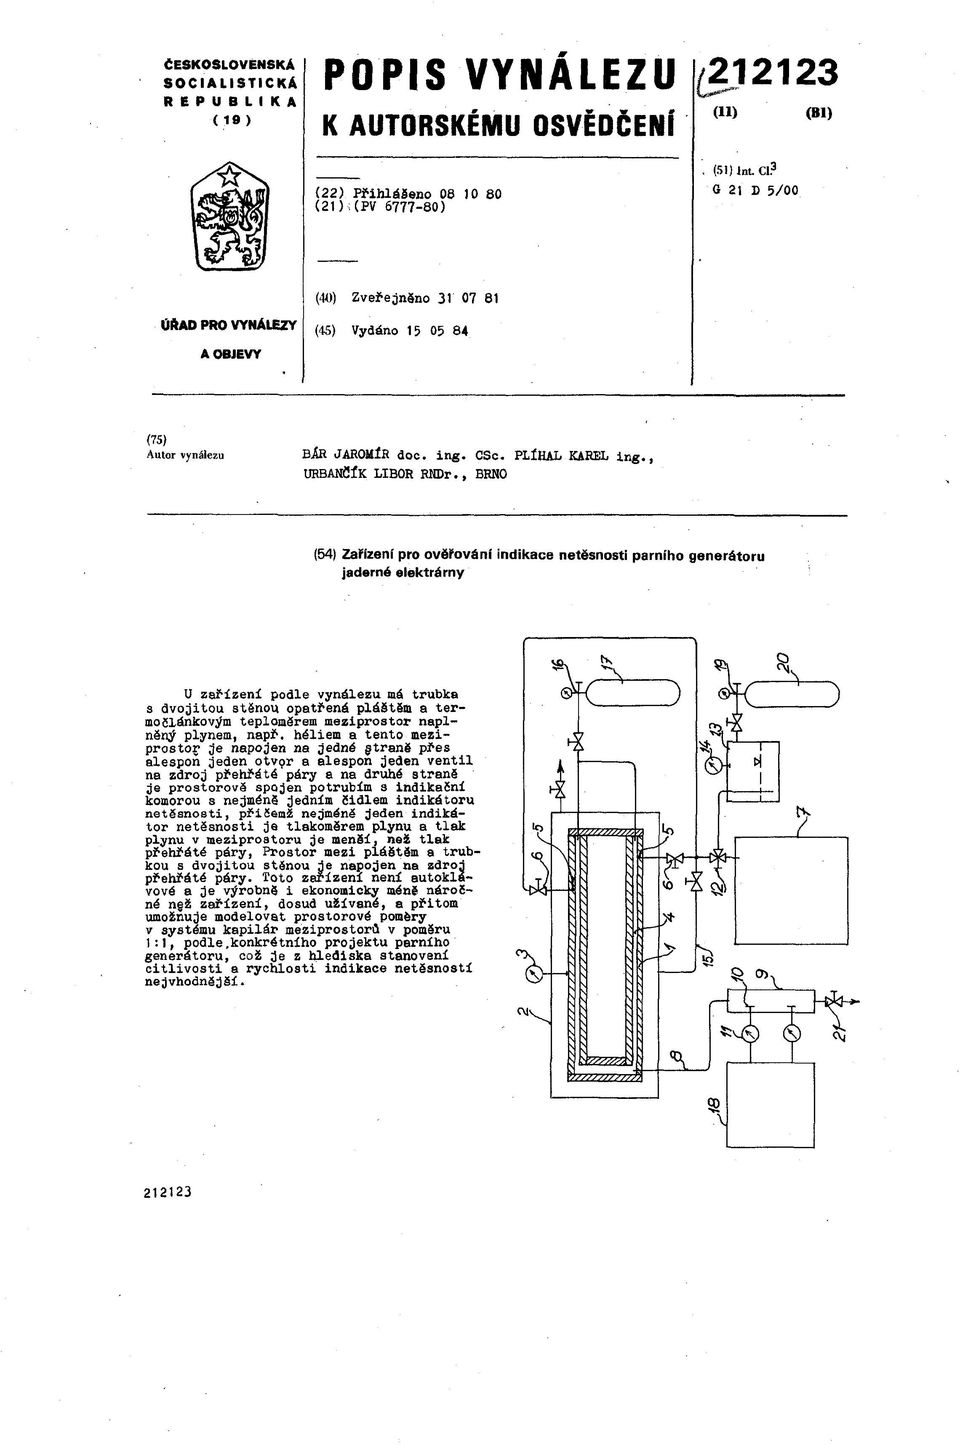 , BRNO (54) Zařízení pro ověřováni indikace netěsnosti parního generátoru jaderné elektrárny U zařízení podle vynálezu má trubka s dvojitou stěnou opatřená pláätsdi a termočlánkovým teploměrem